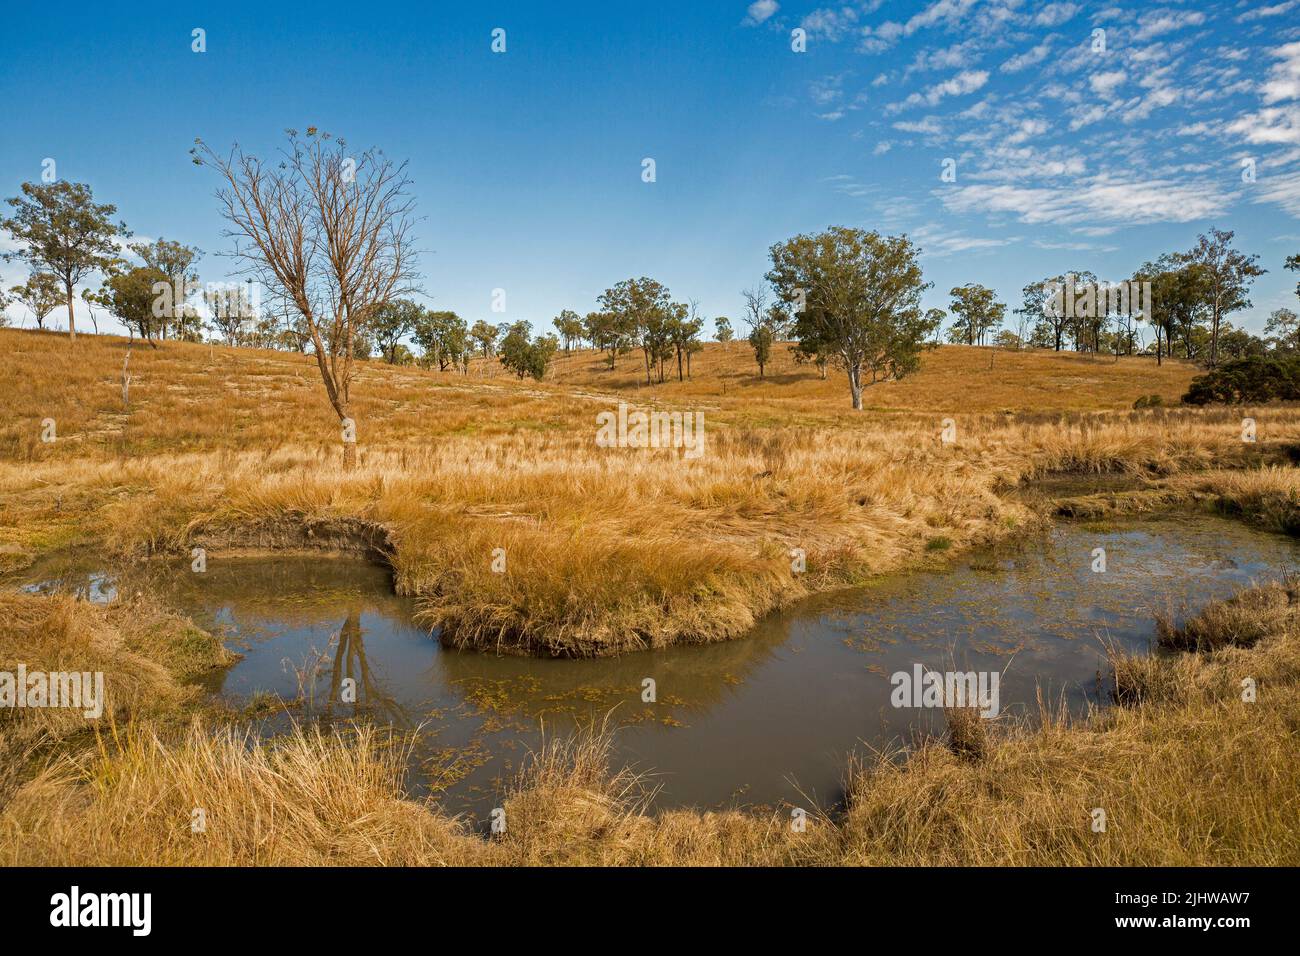 Paysage rural australien avec des herbes dorées et des gommiers épars hemming creek au pied de collines vallonnées sous le ciel bleu Banque D'Images